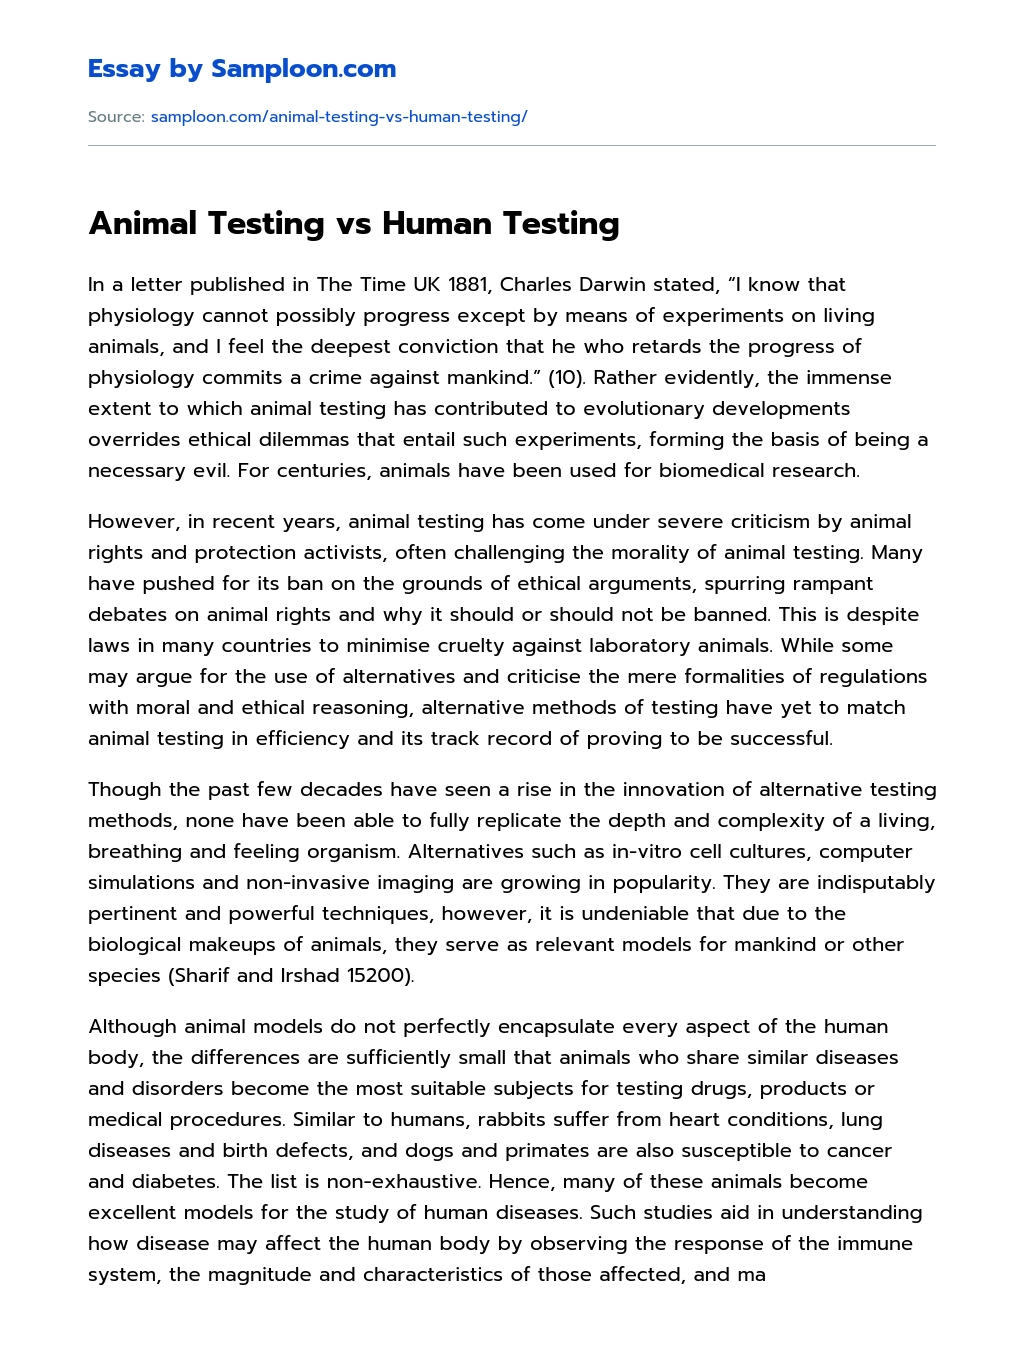 Animal Testing vs Human Testing essay